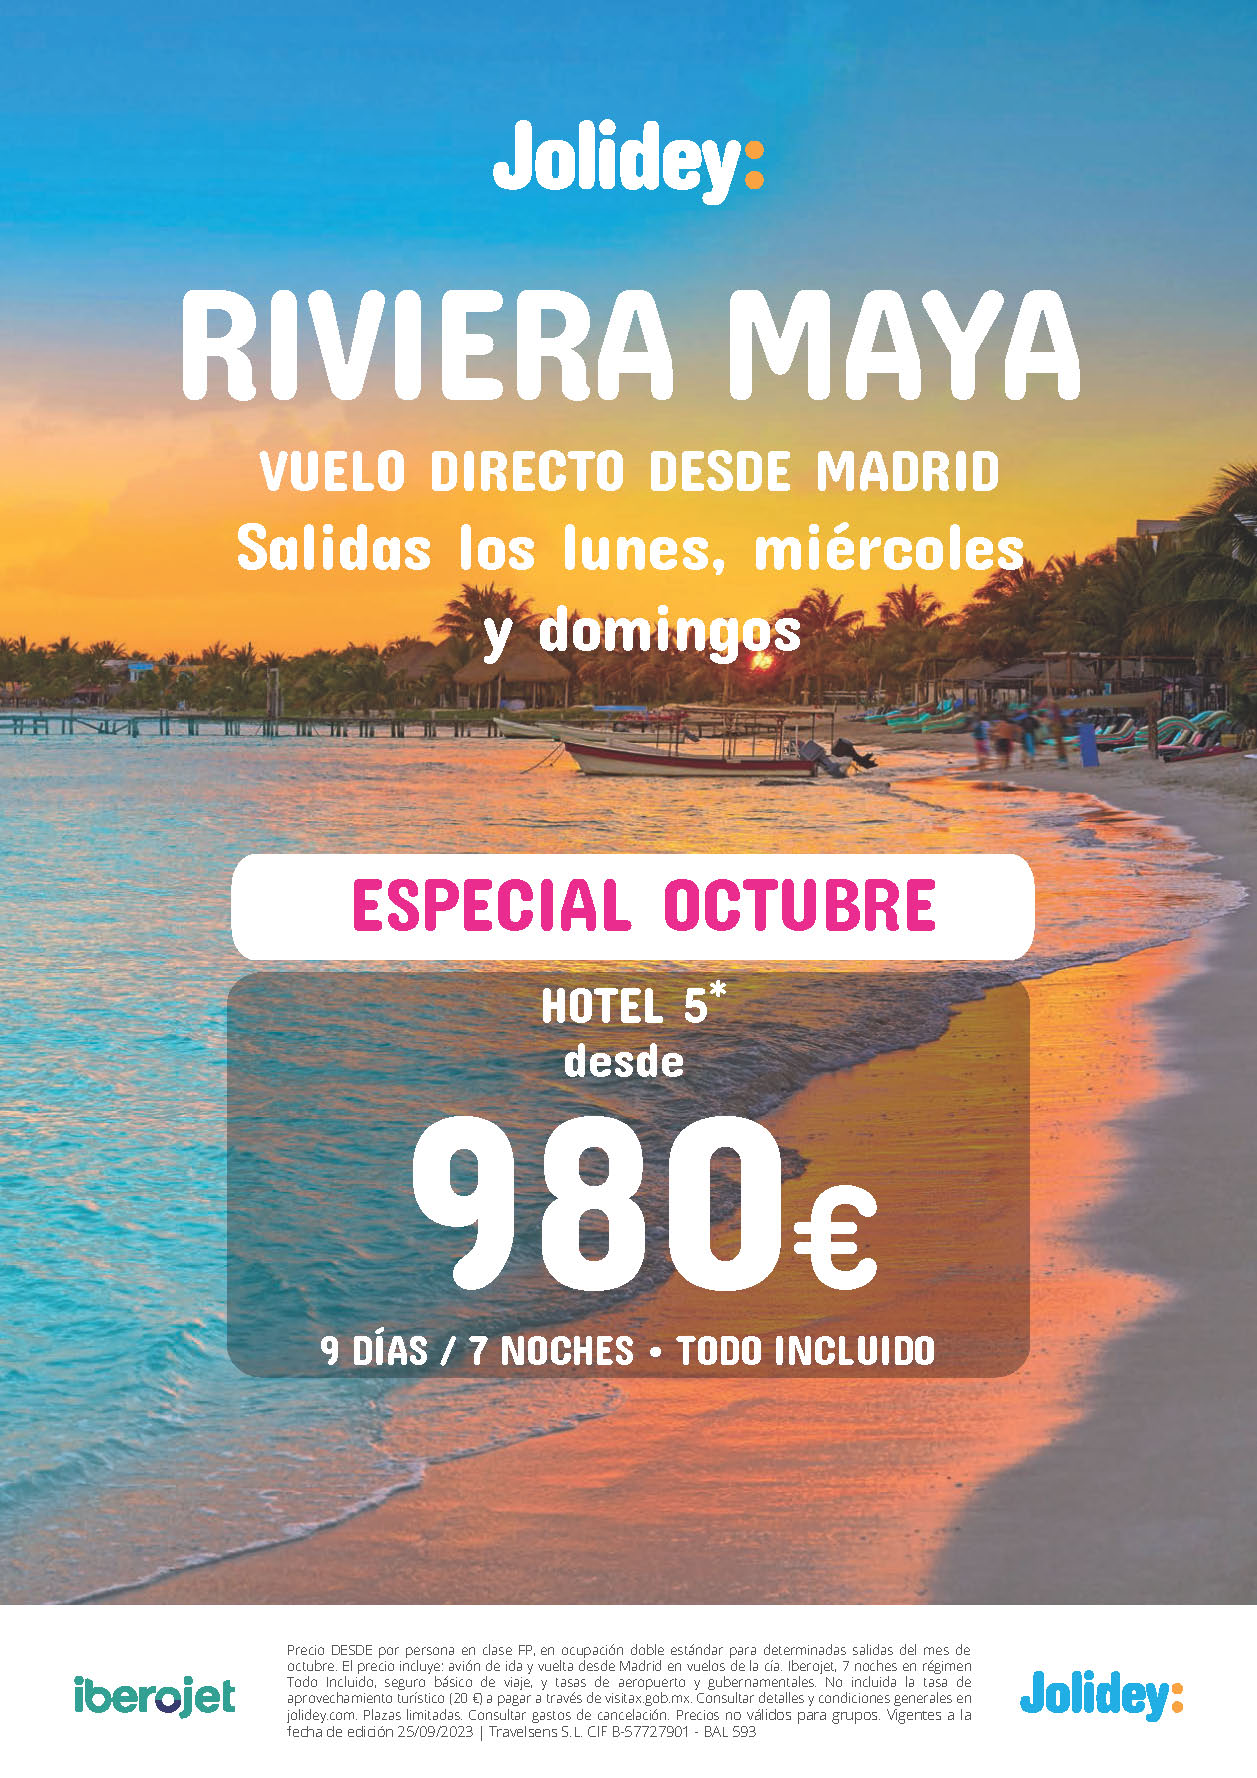 Oferta Jolidey Especial Octubre 2023 Estancia en Riviera Maya Mexico 9 dias Todo Incluido salidas en vuelo directo desde Madrid